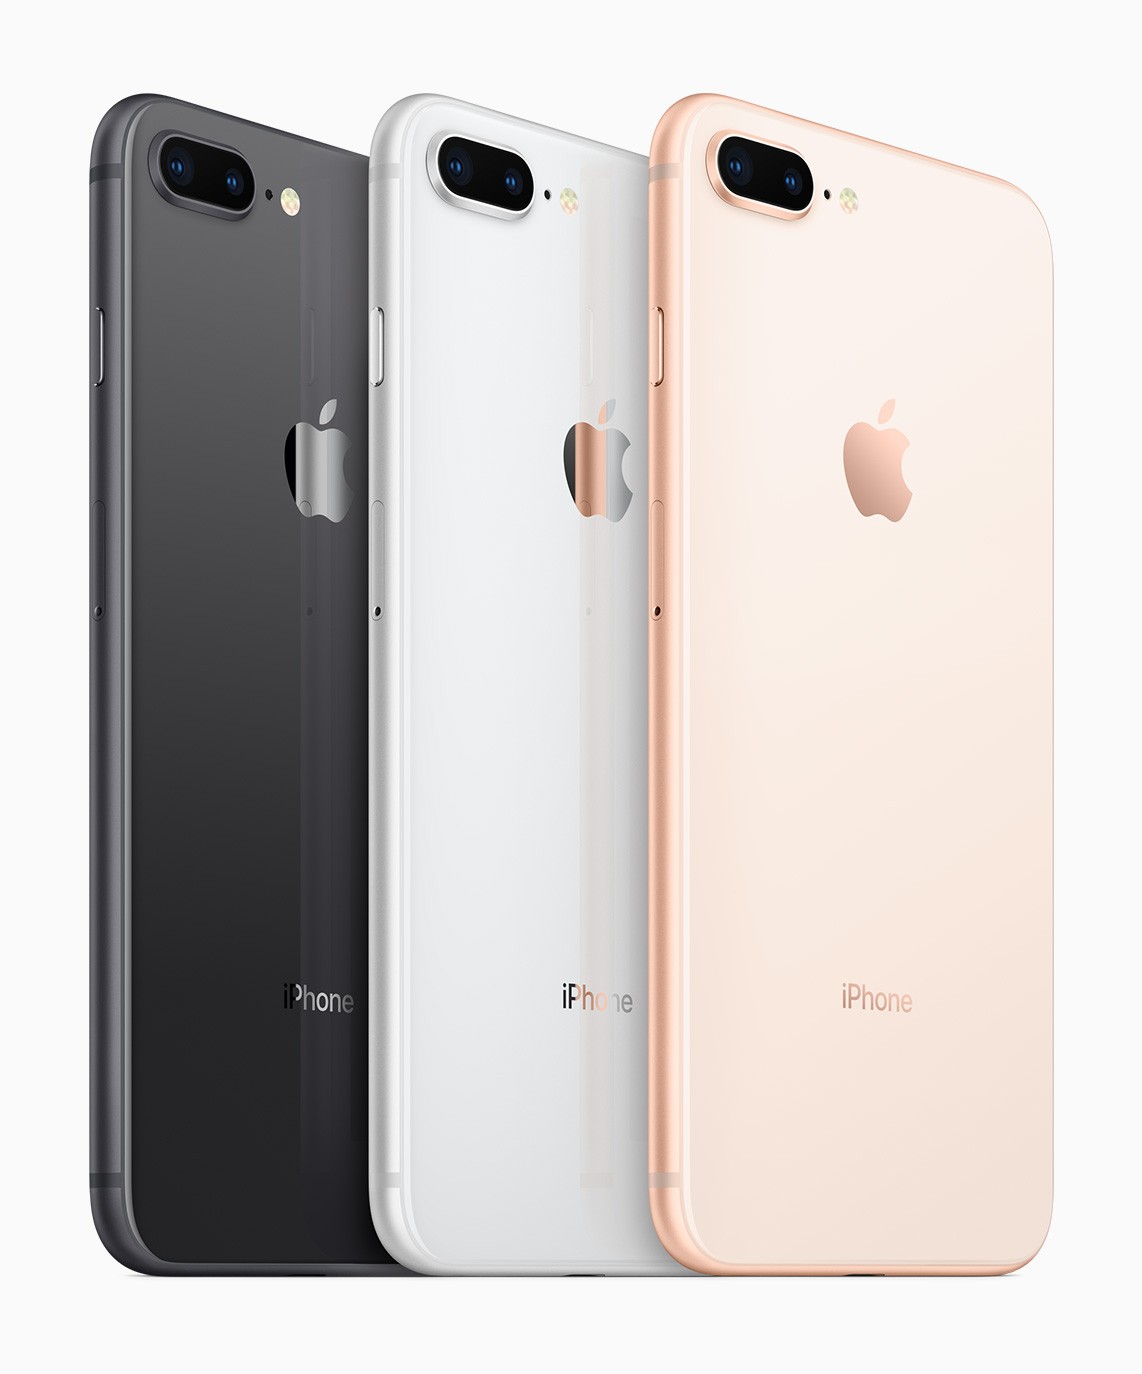 iPhone 8 и iPhone 8 Plus представлены официально